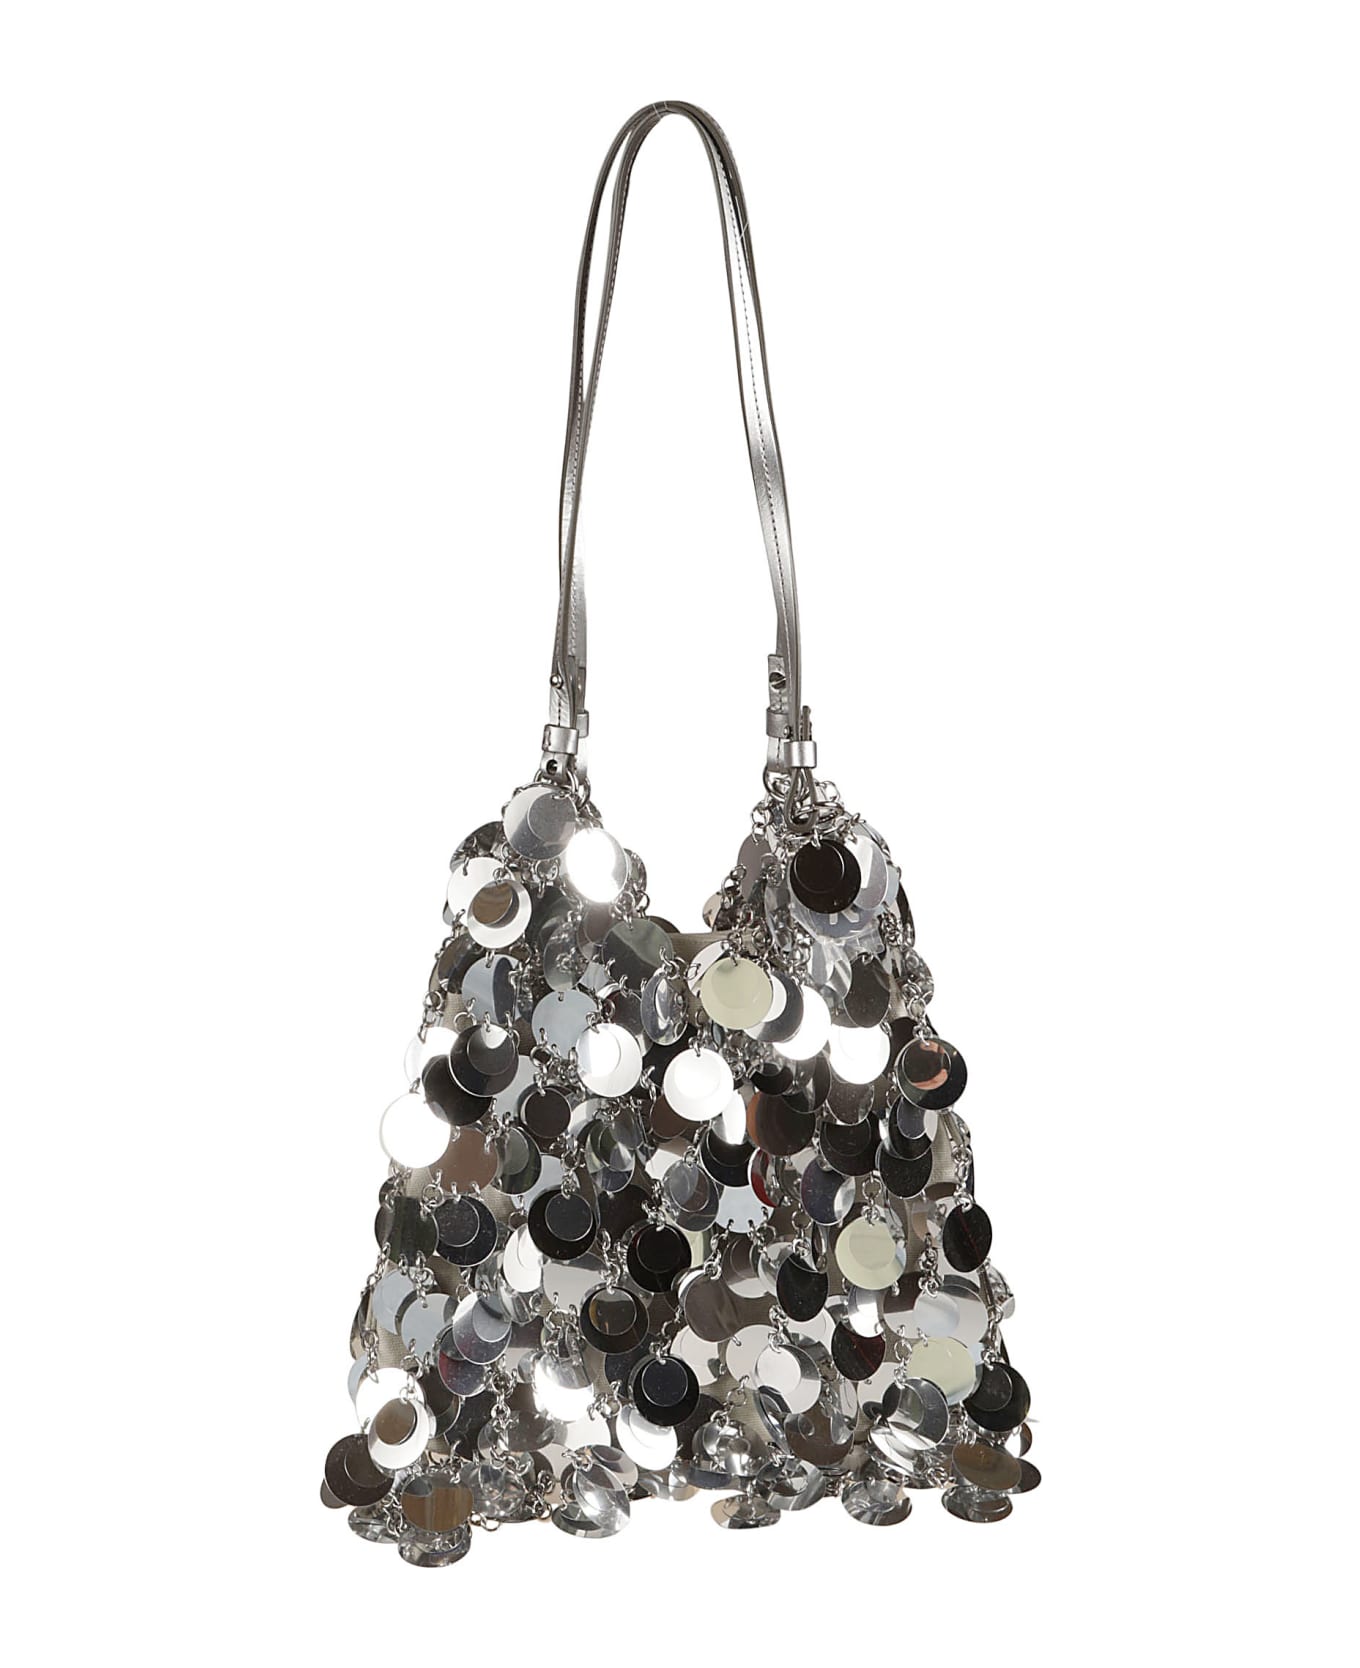 Paco Rabanne Embellished Metallic Shoulder Bag - Silver